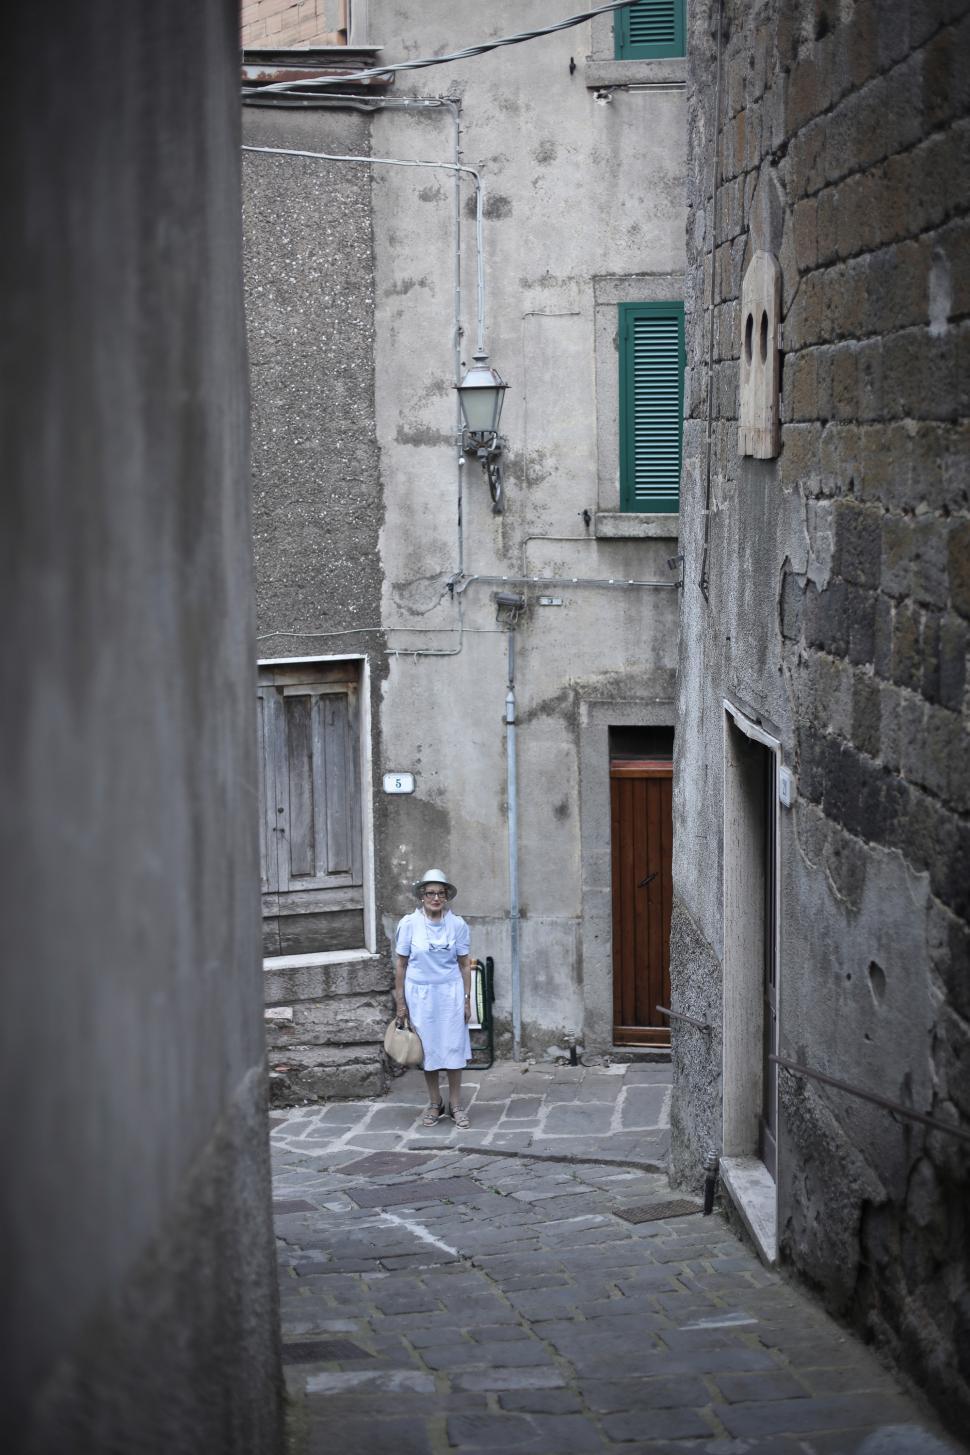 Free Image of Elderly Woman Walking On Cobblestone Street 